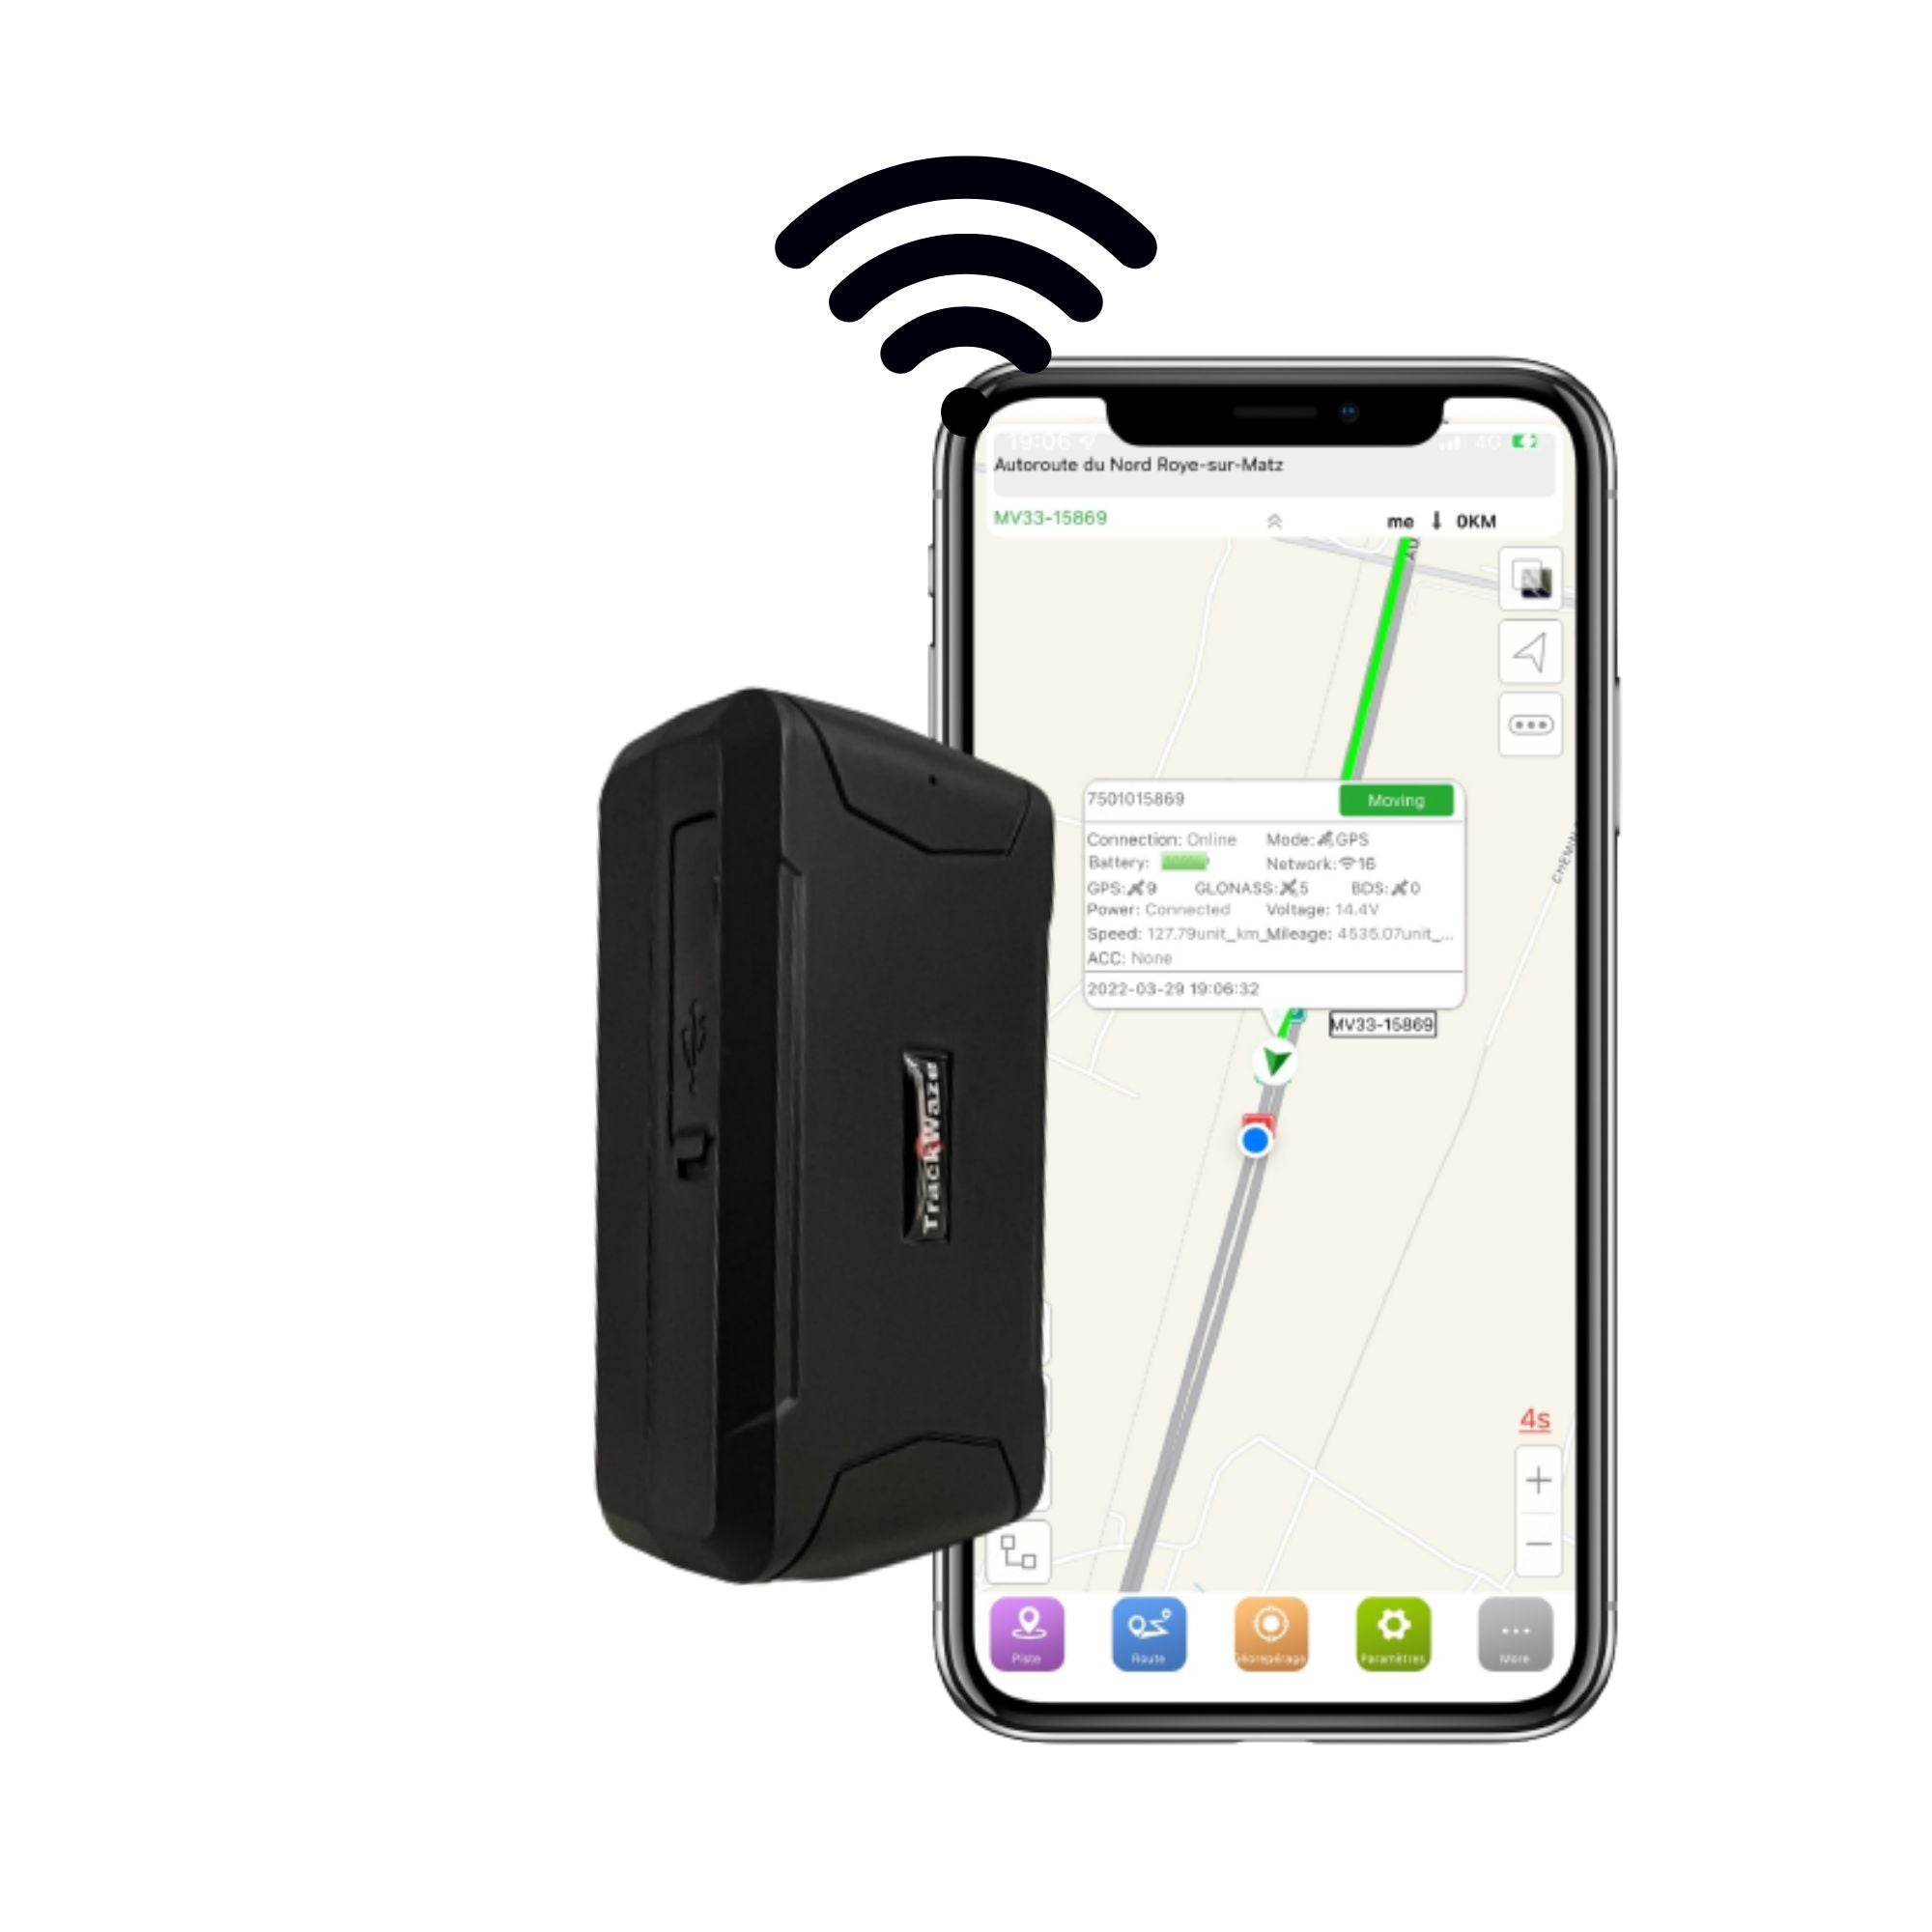 Traceur GPS voiture autonome sans carte sim avec abonnement compris